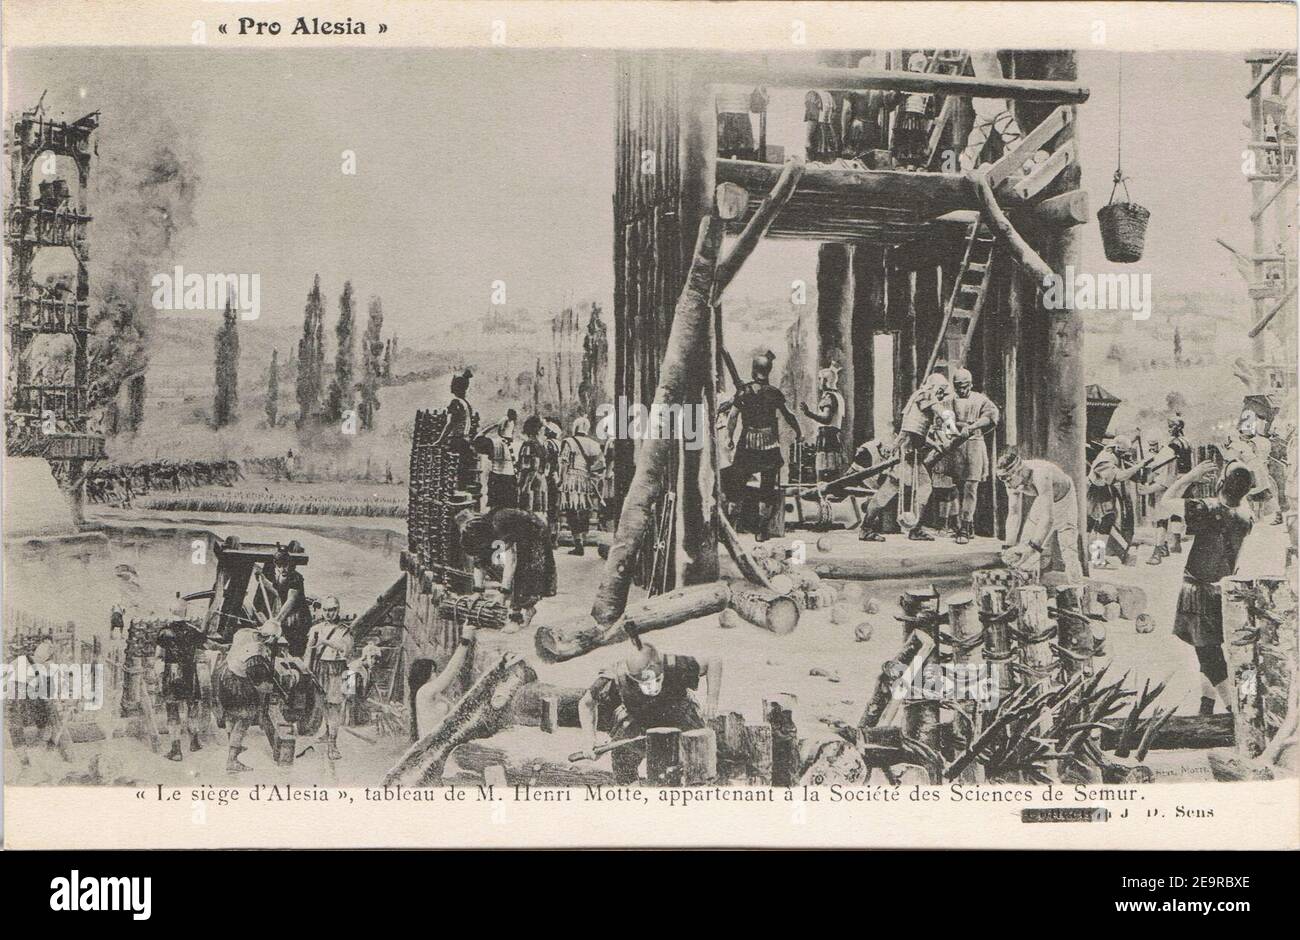 Motte Le siège d'Alésia (carte postale noir et blanc). Stock Photo